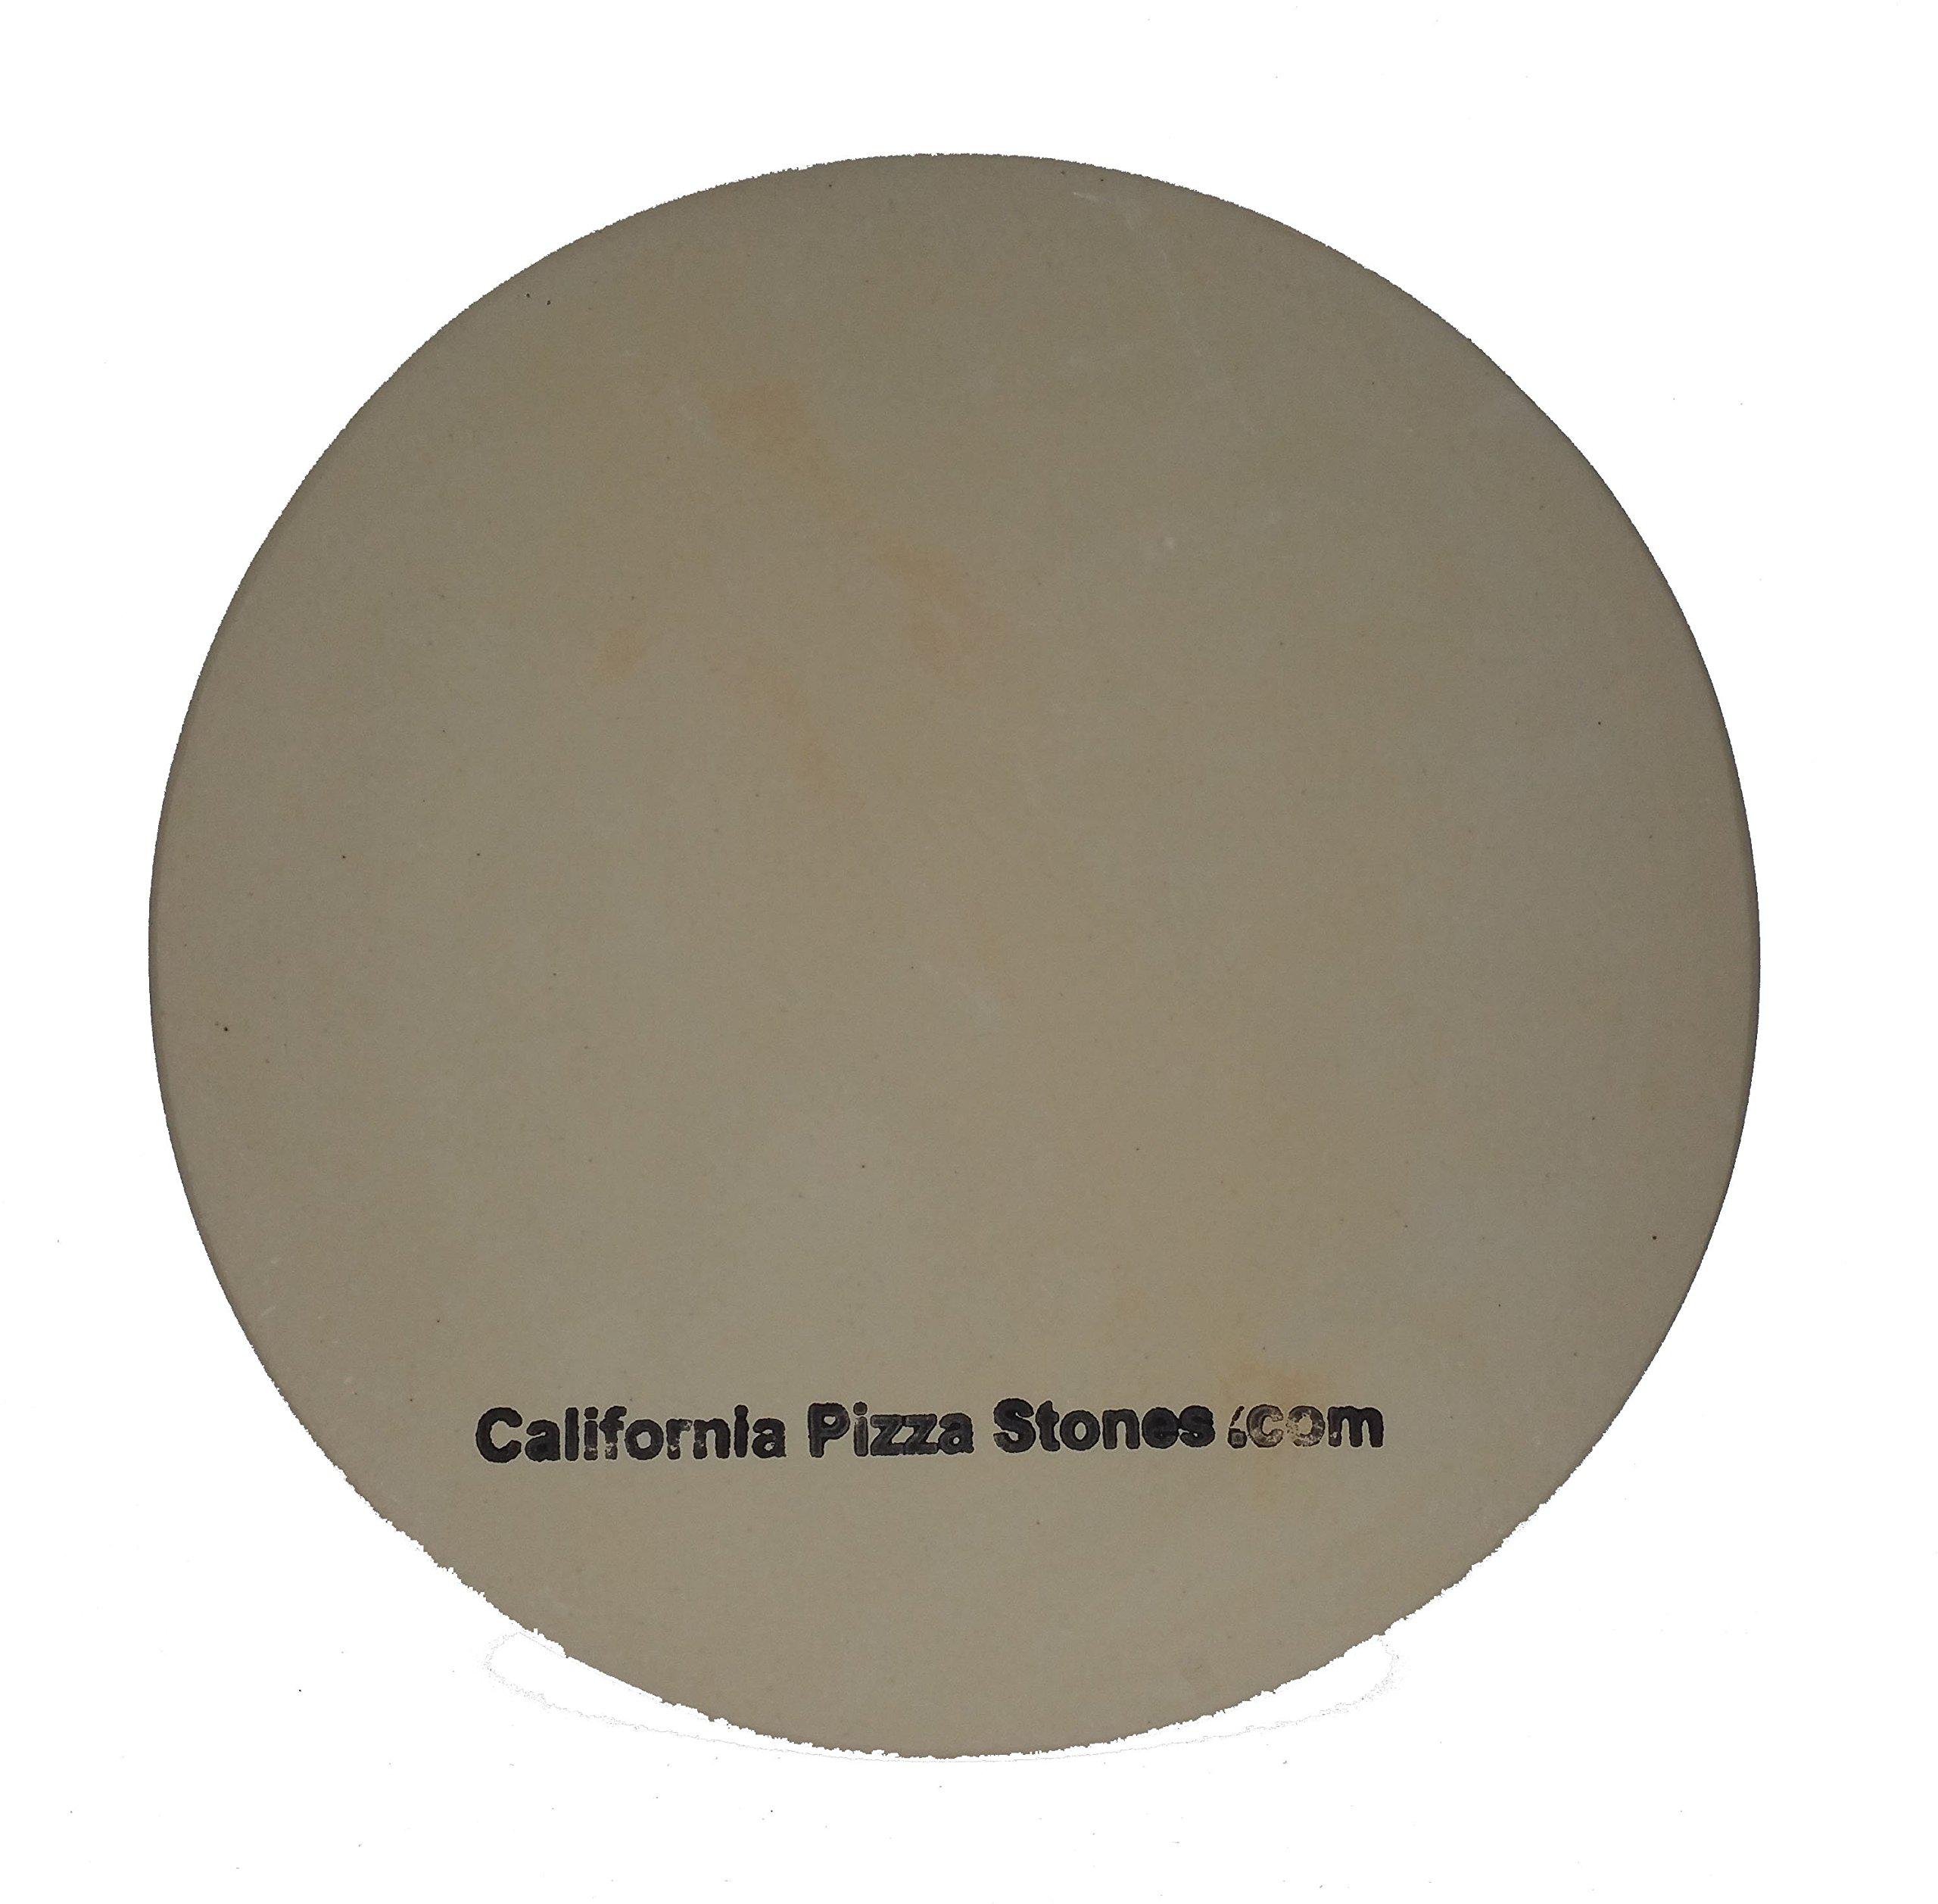 California Pizza Stones 21 inch round pizza stone